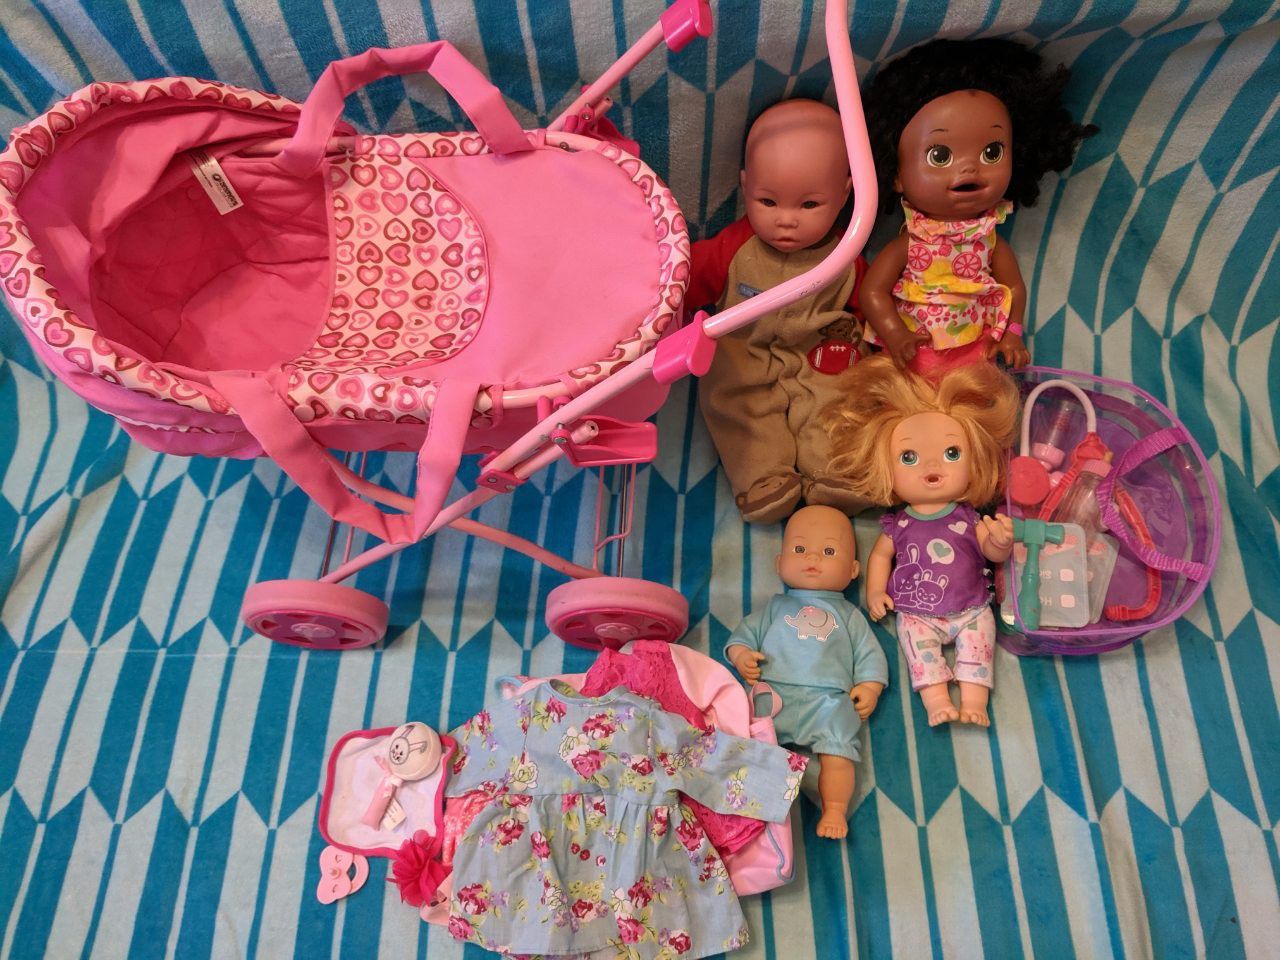 Doll's for toddler girl